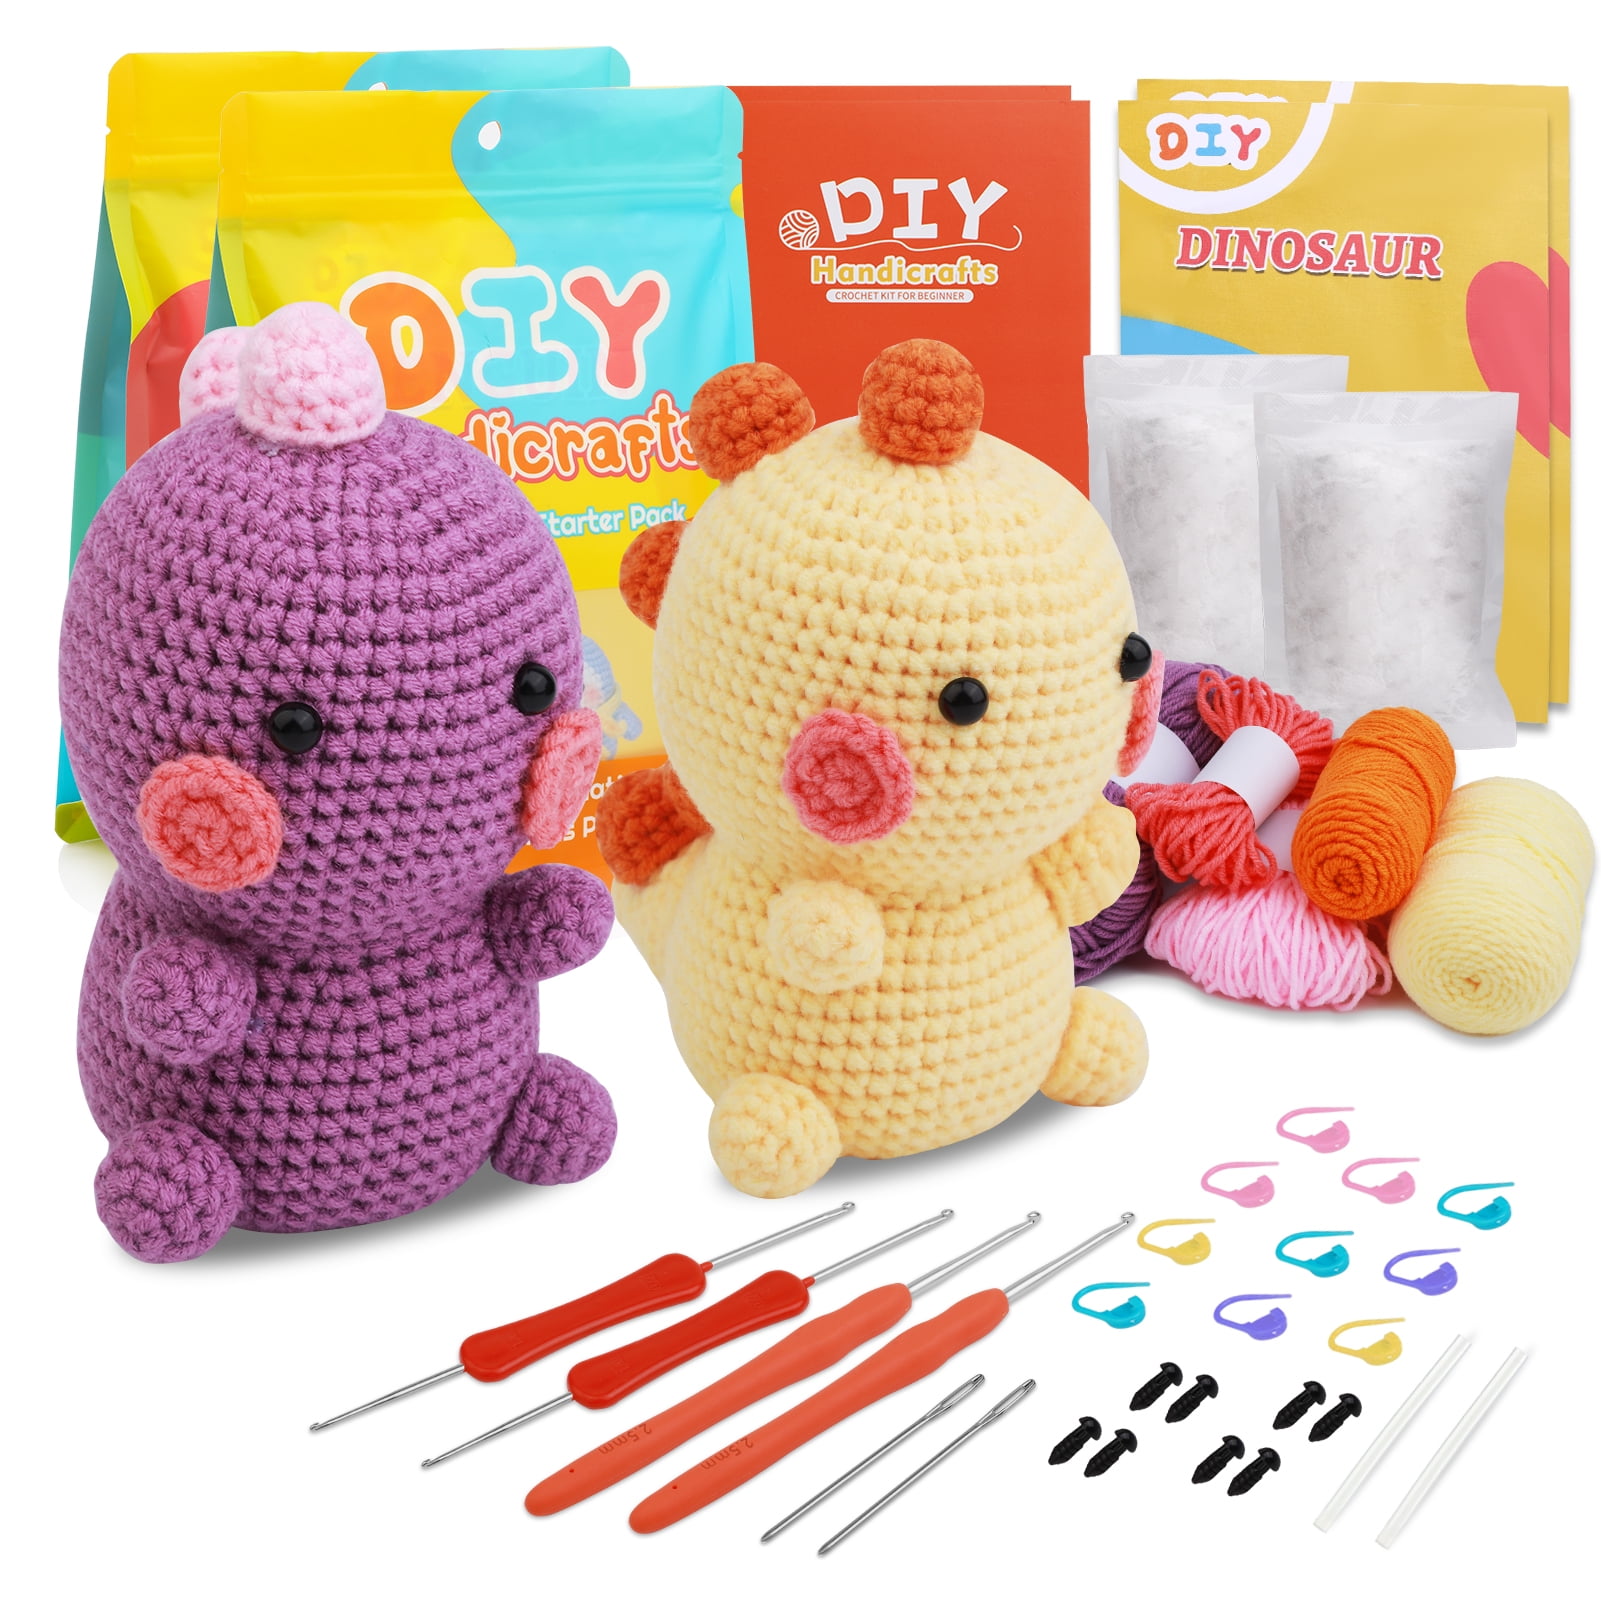 UzecPk Crochet Kit for Beginners, Knitting Kit for Adults, Crochet Starter  Kit with 10 Colors of Yarn, Crochet Stuffing, Crochet Keychain